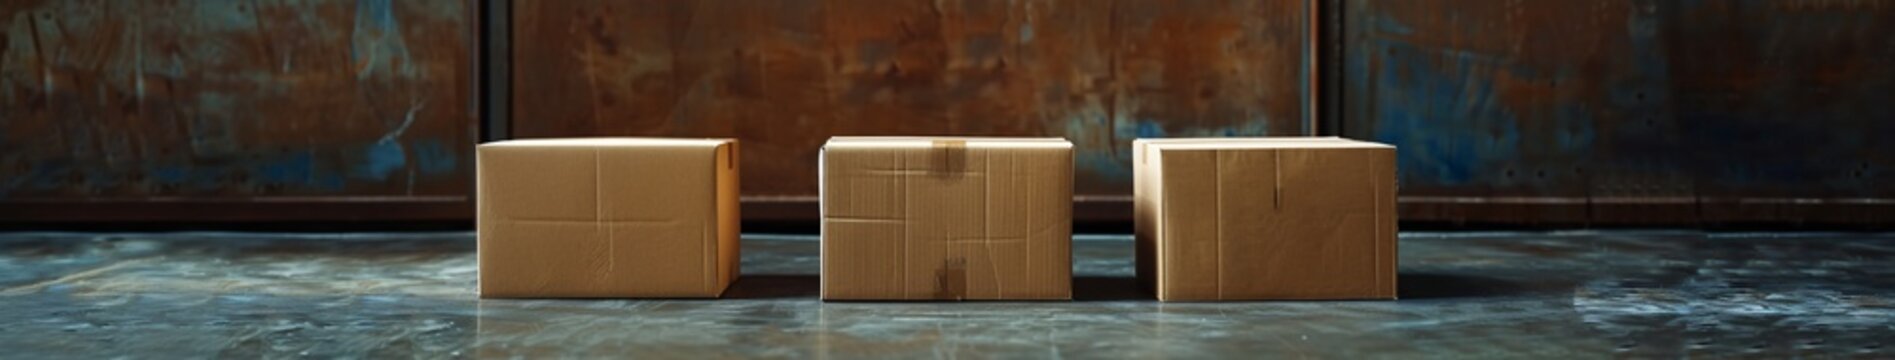 a cardboard box on a table